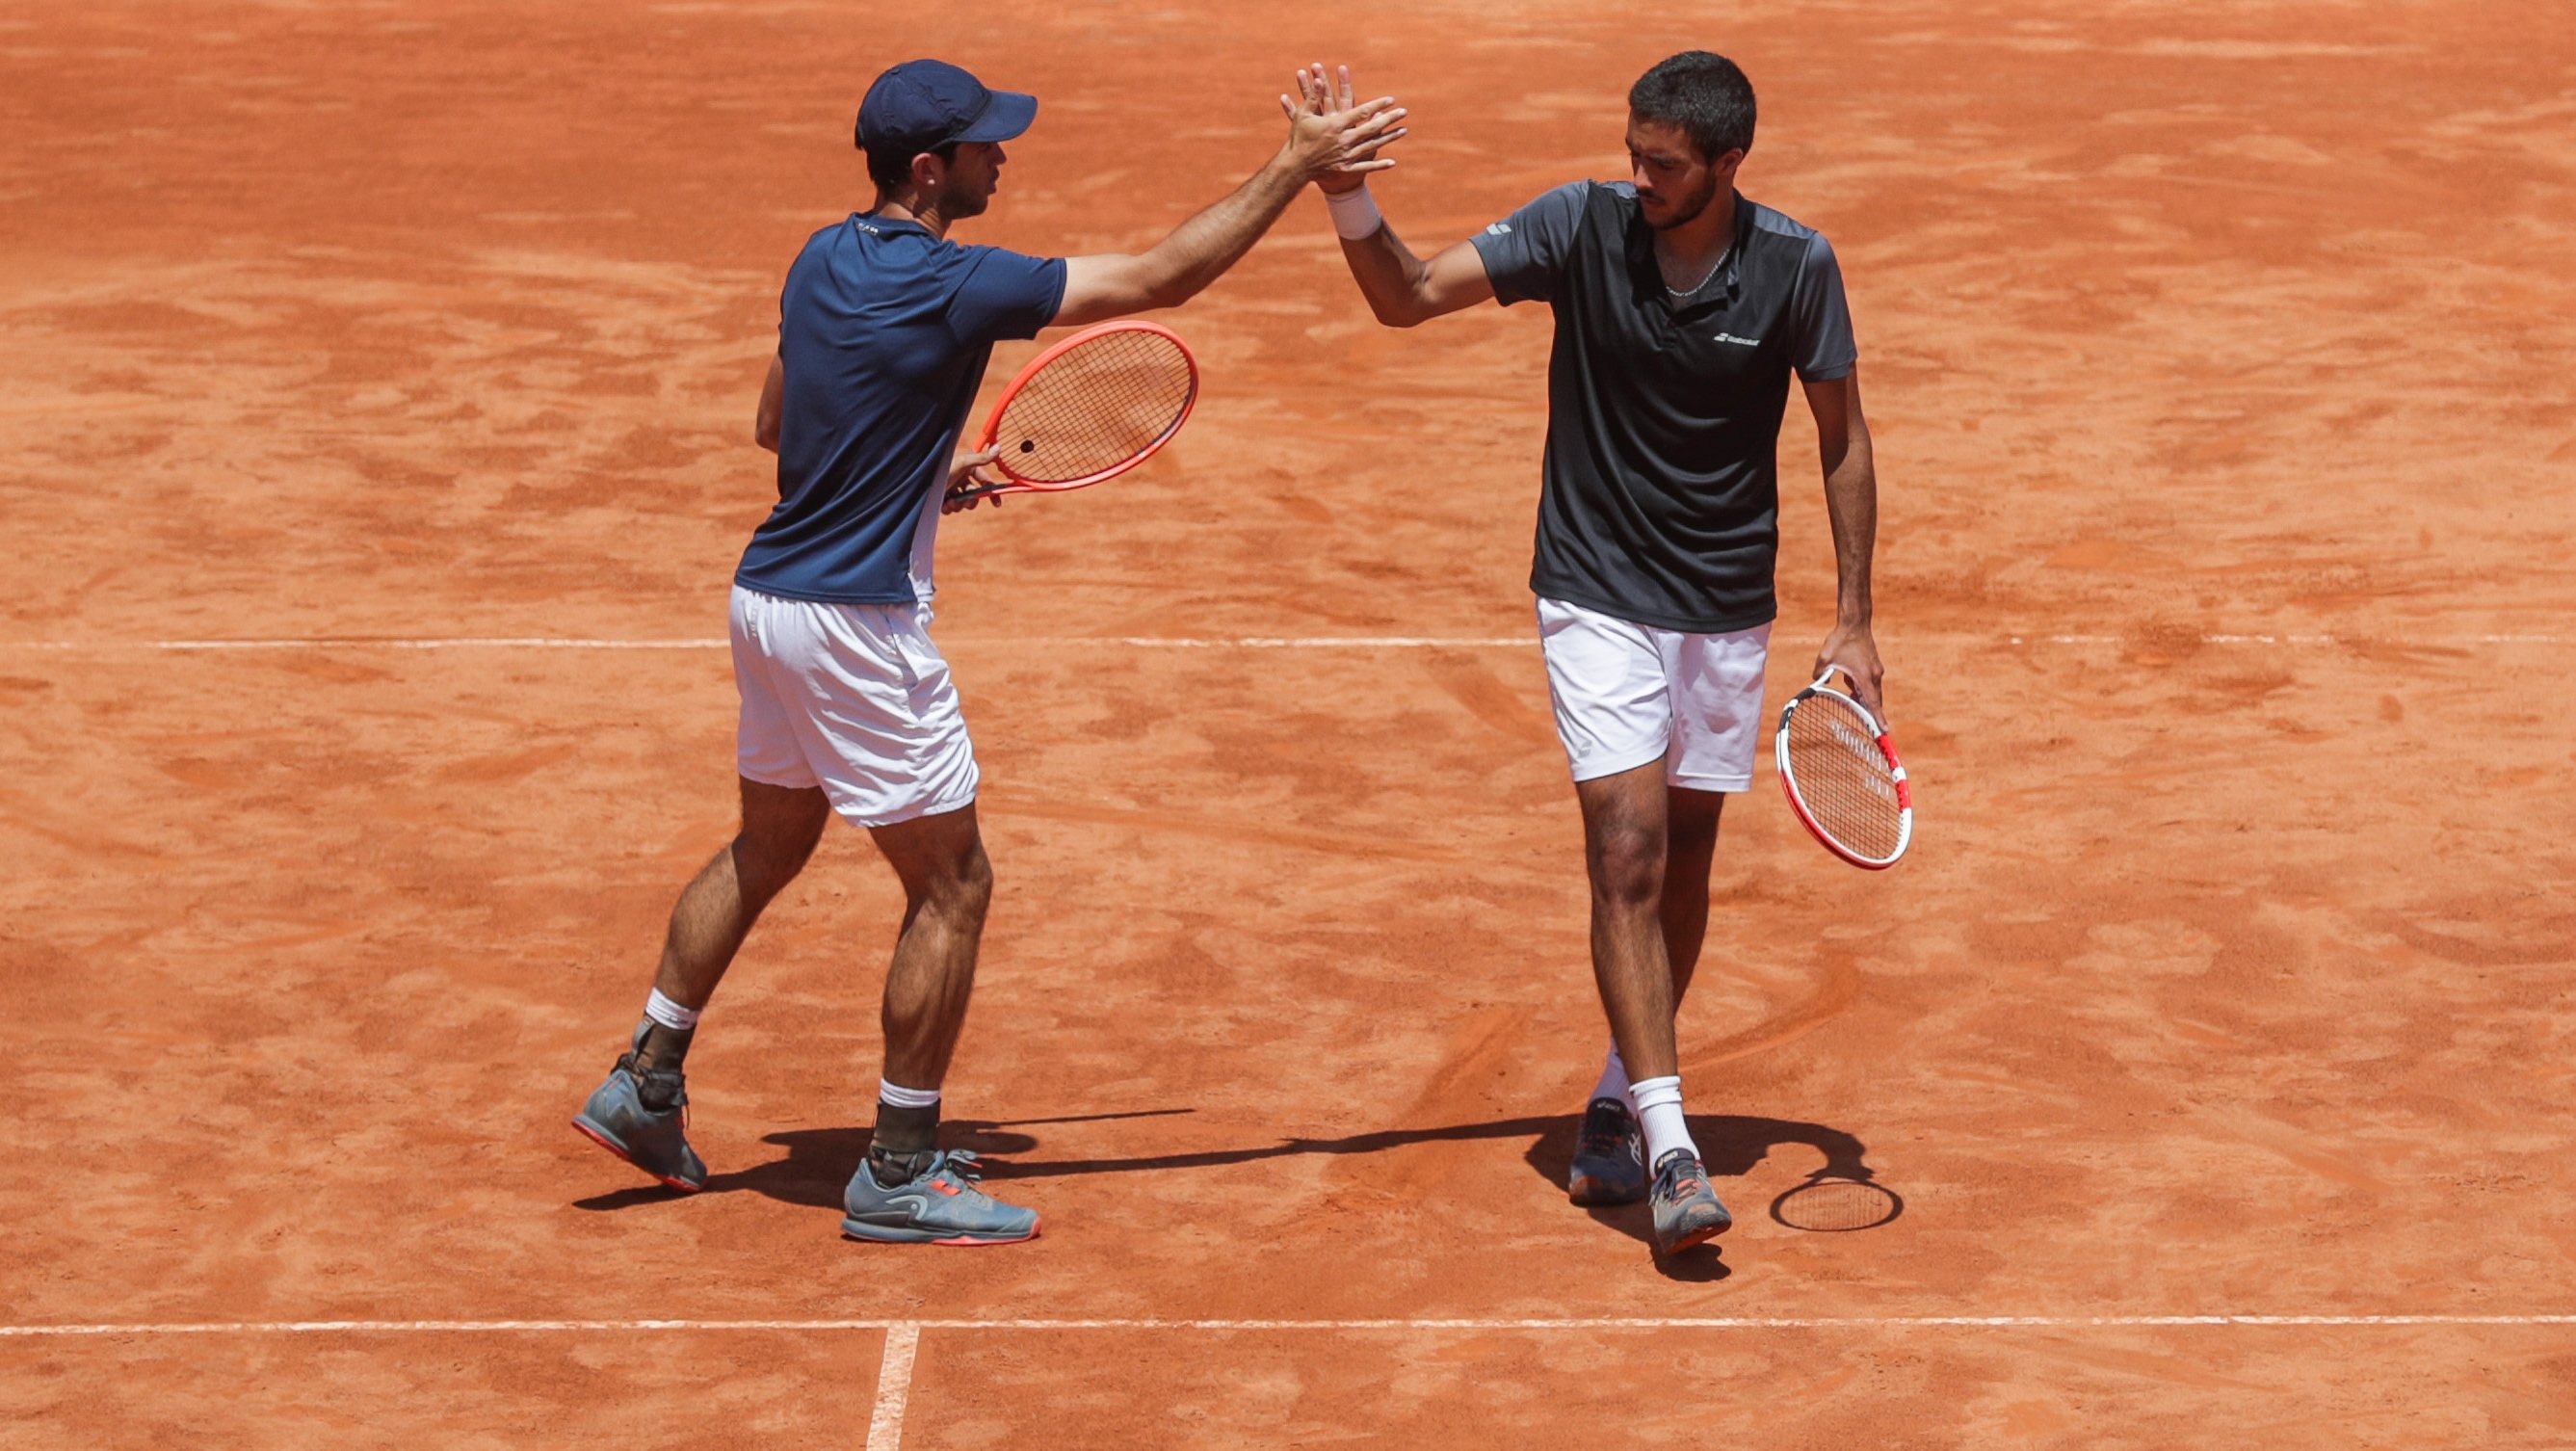 Nuno Borges e Francisco Cabral tornaram-se apenas a segunda dupla a ganhar torneios ATP depois de Emanuel Couto e Bernardo Mota e a primeira a conquistar o Estoril Open